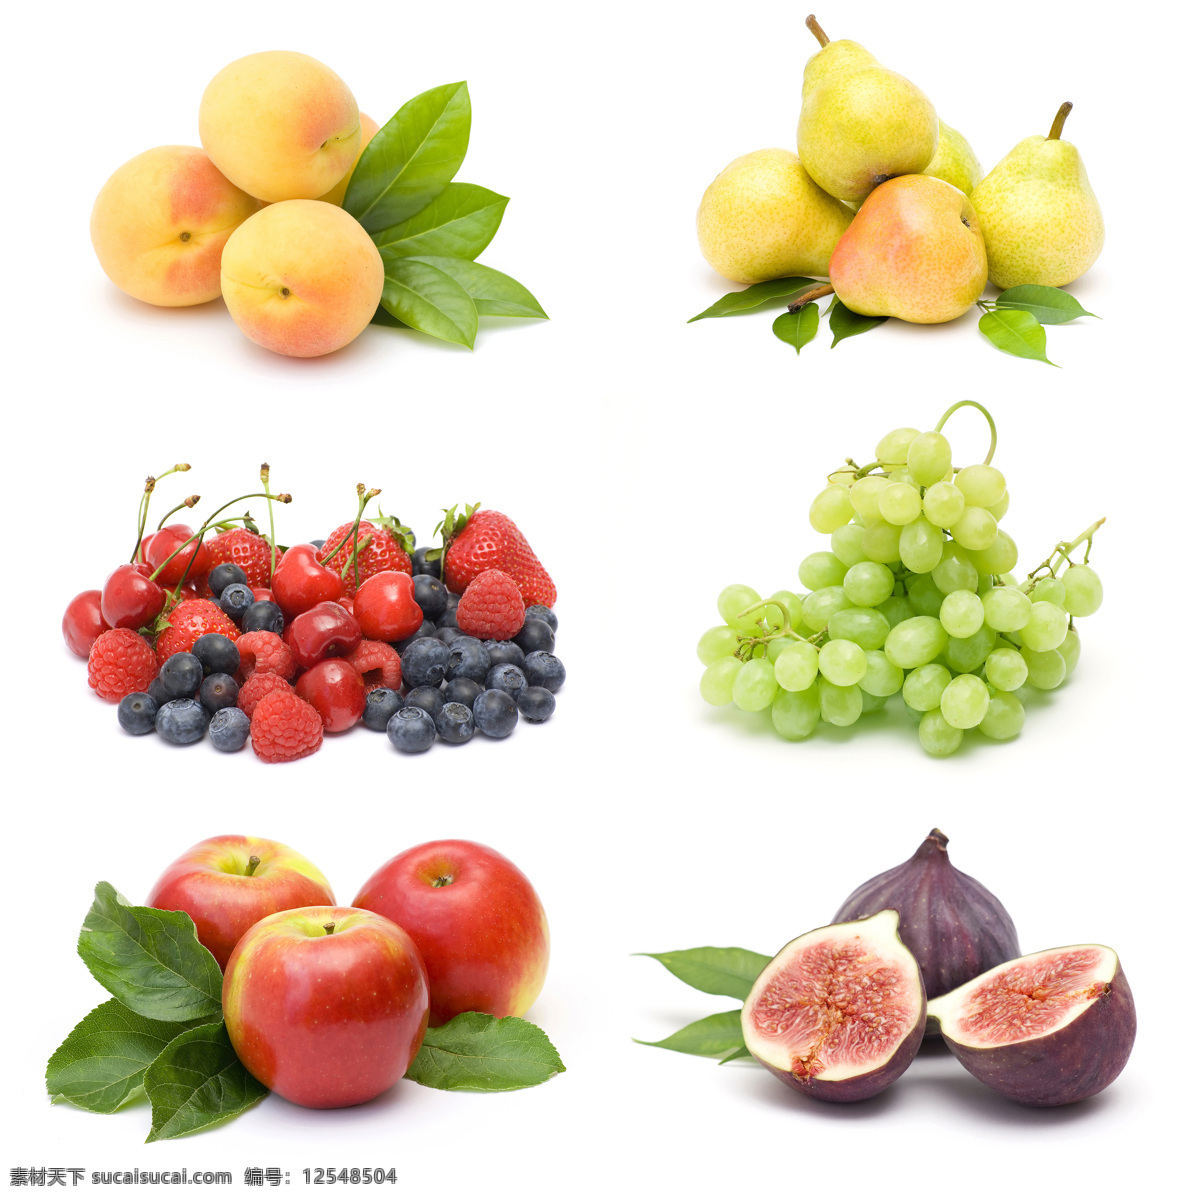 各种 新鲜 水果 食物 绿叶 梨 苹果 草莓 葡萄 水果图片 餐饮美食